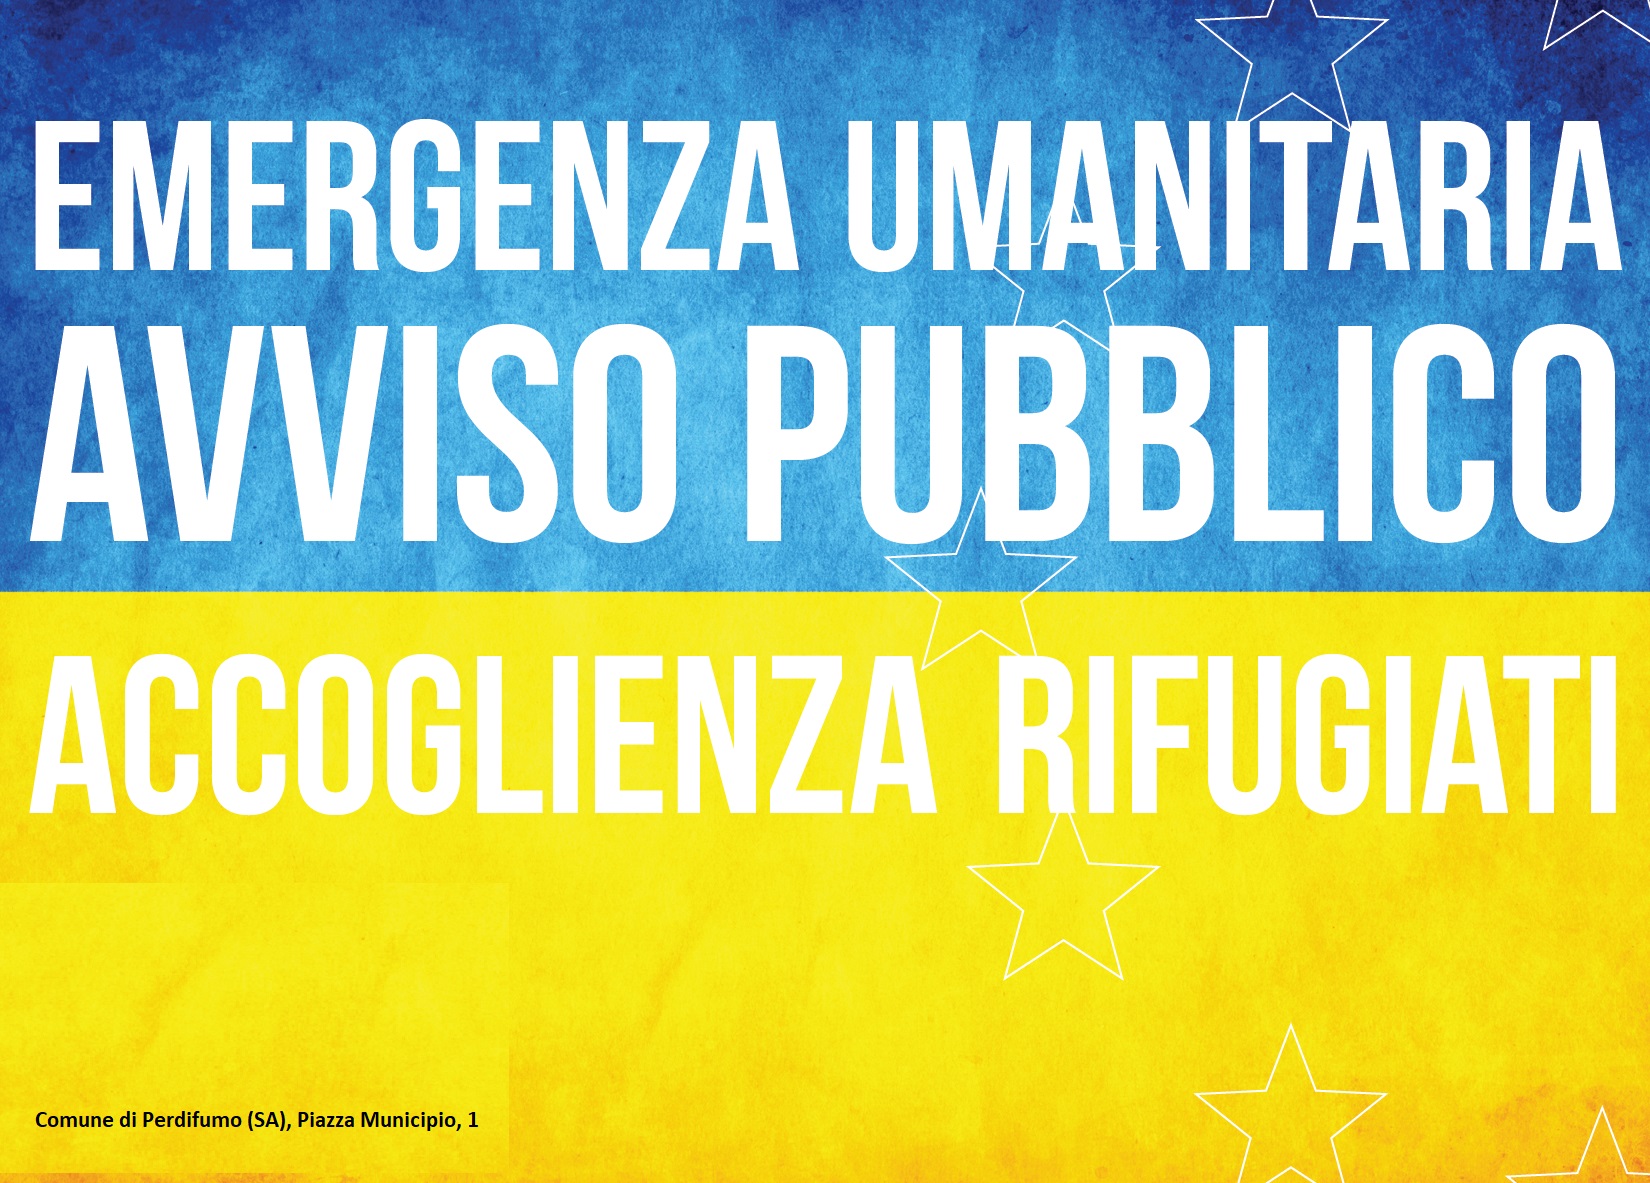 Foglio informativo per i cittadini ucraini che hanno fatto ingresso in Italia a seguito degli eventi bellici